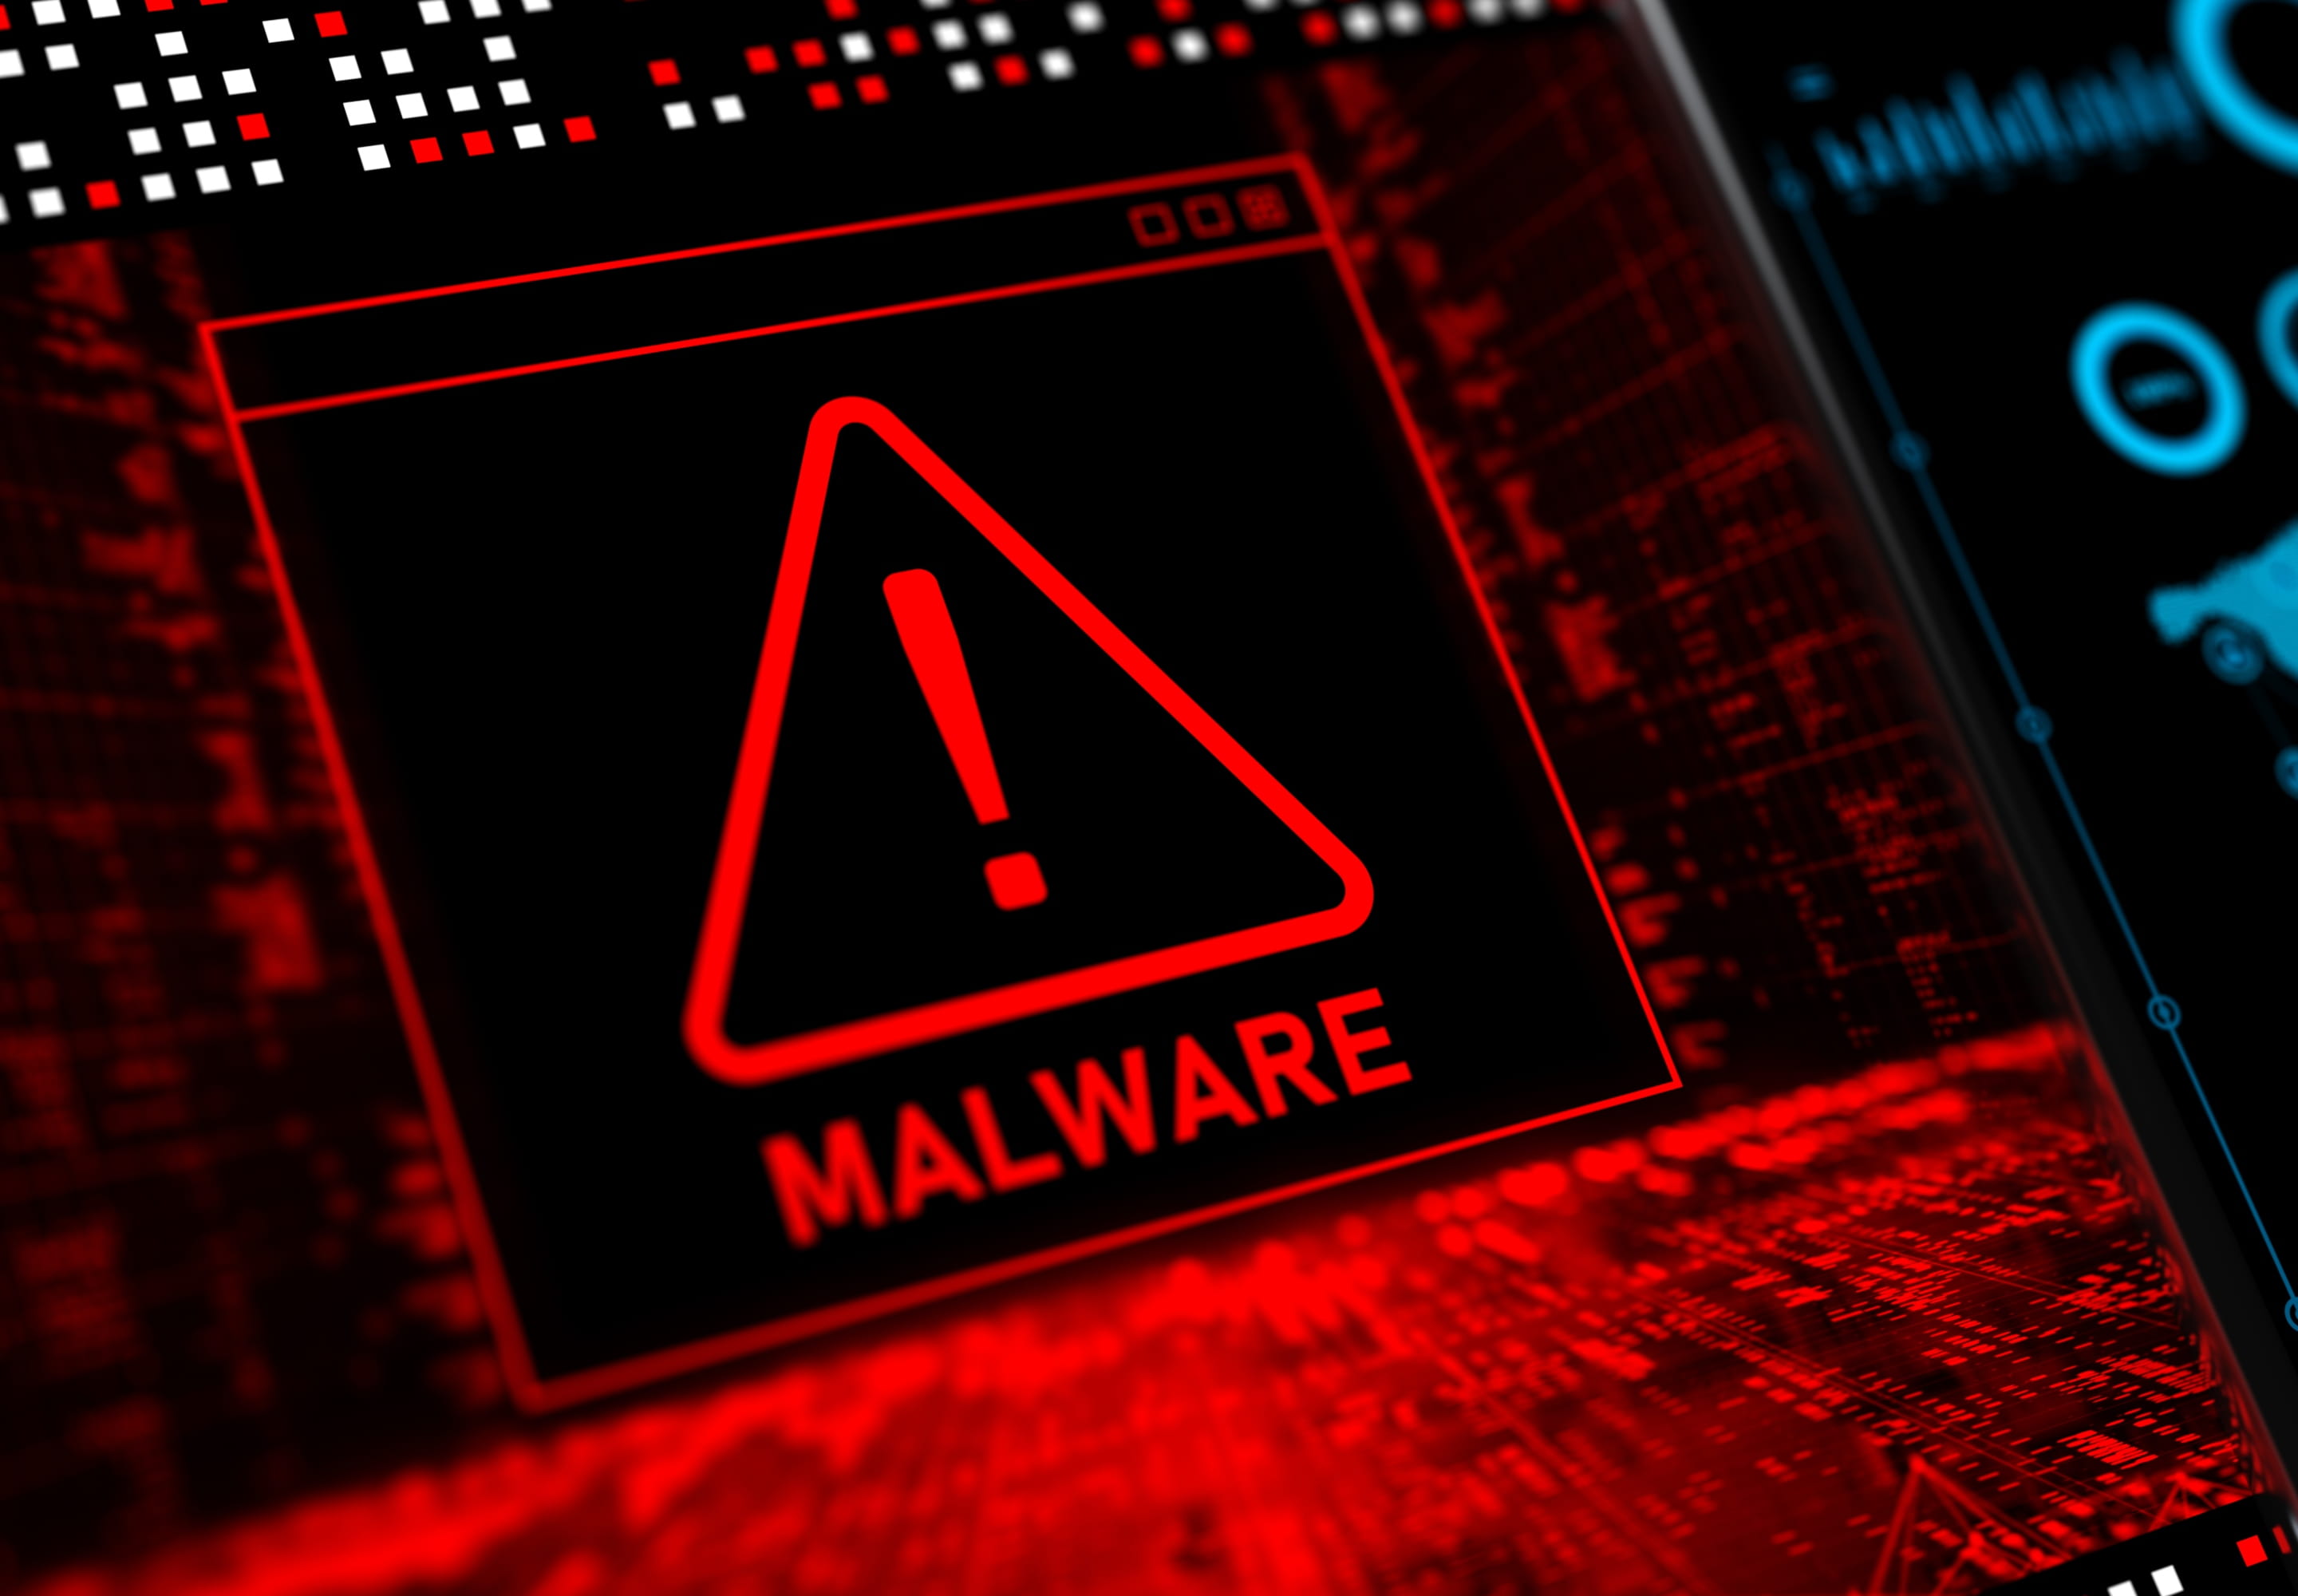 Malware signage